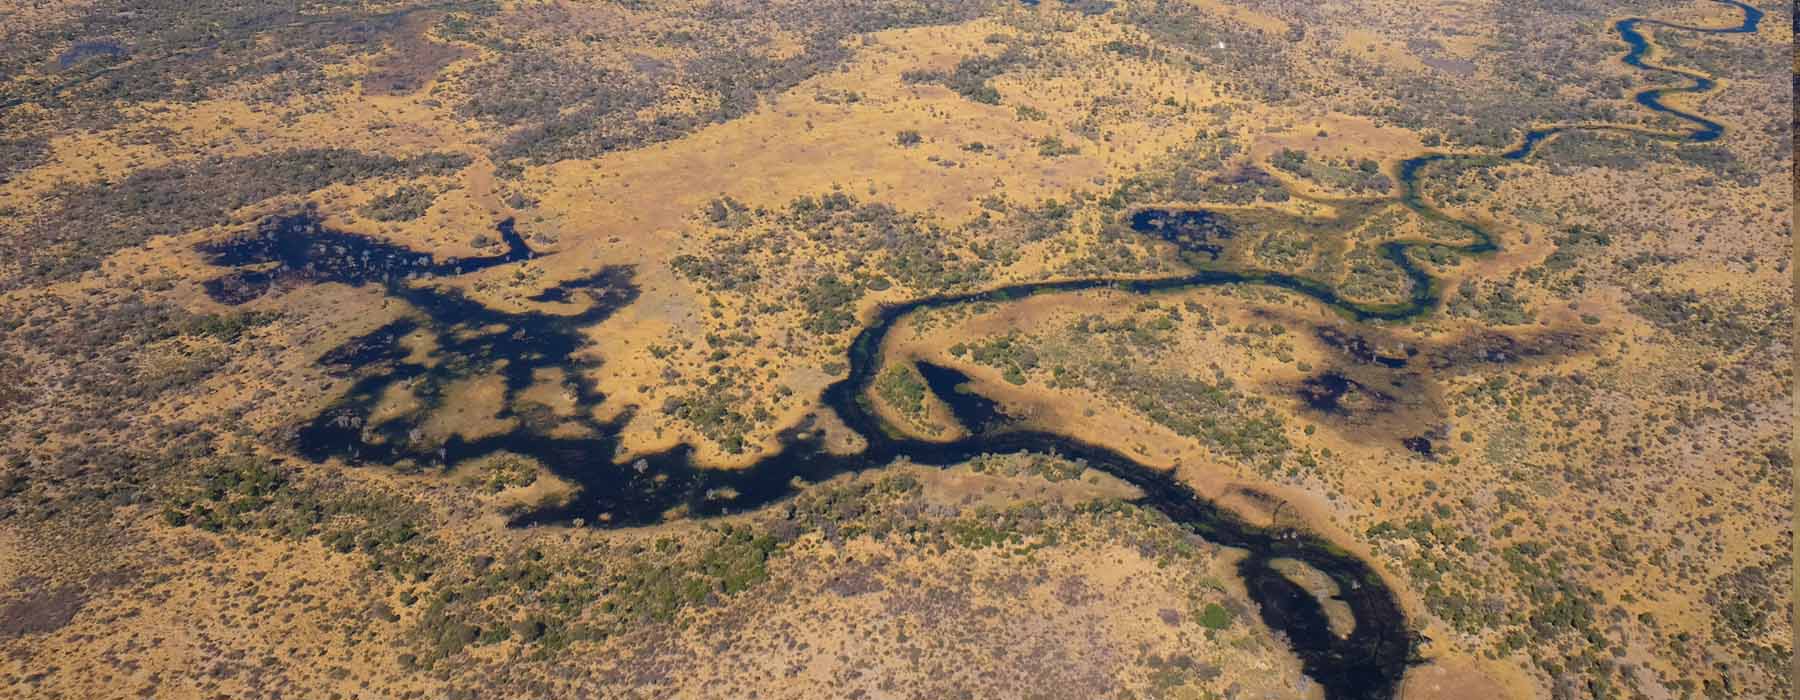 Okavango Delta & Beyond<br class="hidden-md hidden-lg" /> Holidays